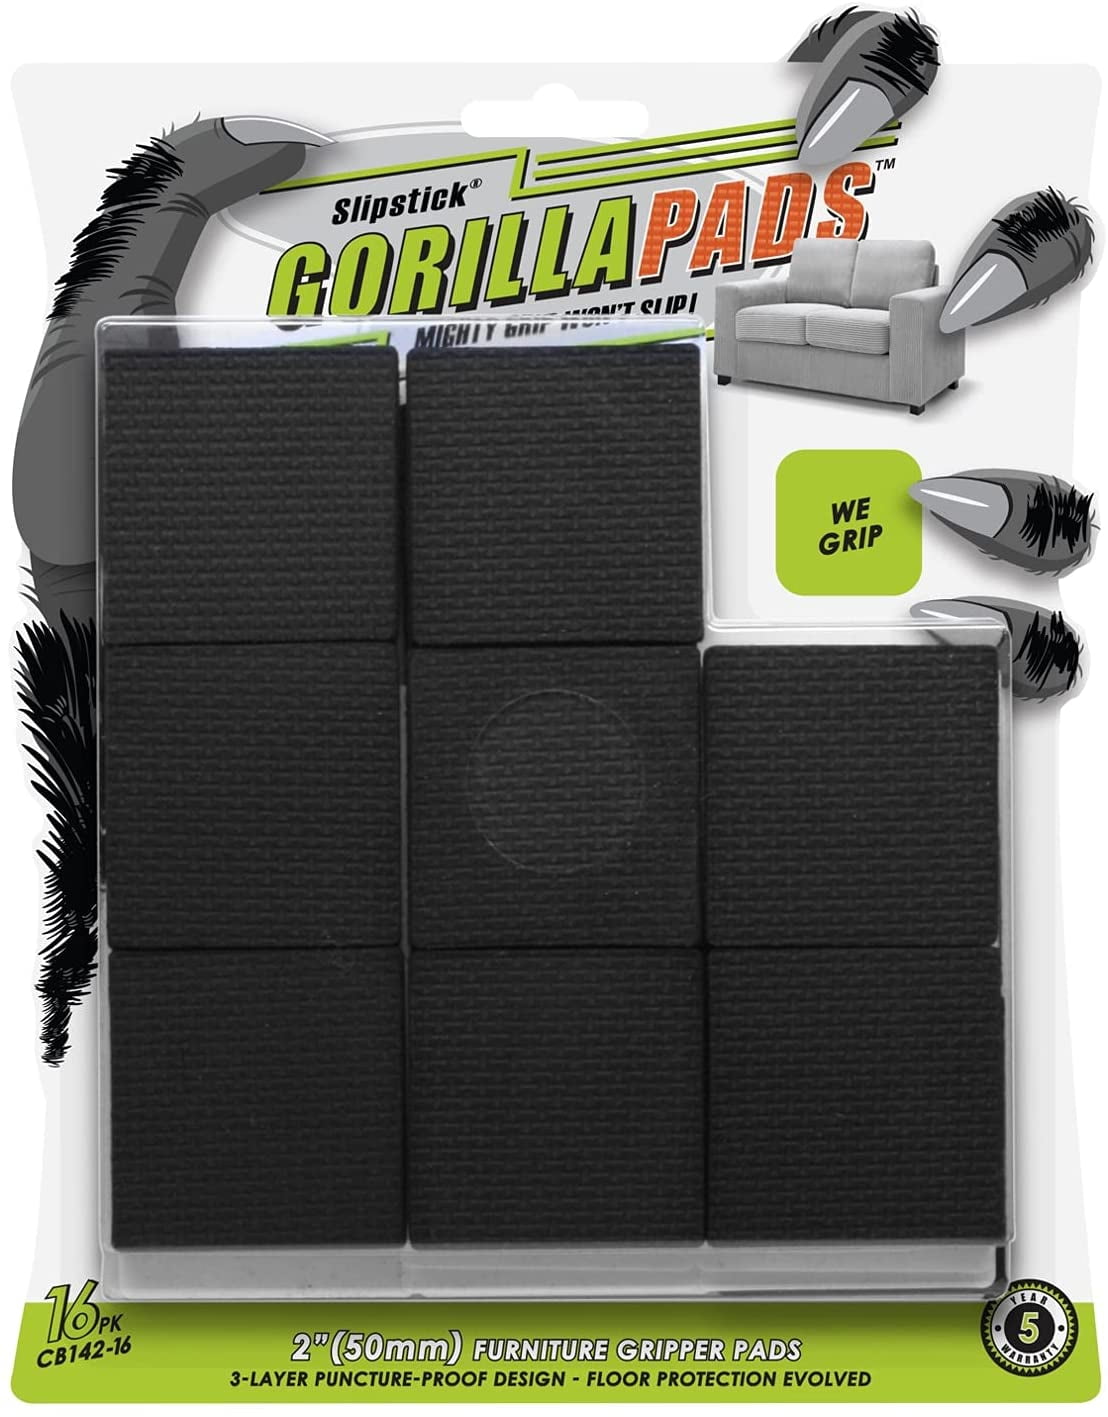 Slipstick 1 GorillaPads Round Furniture Gripper Pads - 16 ct